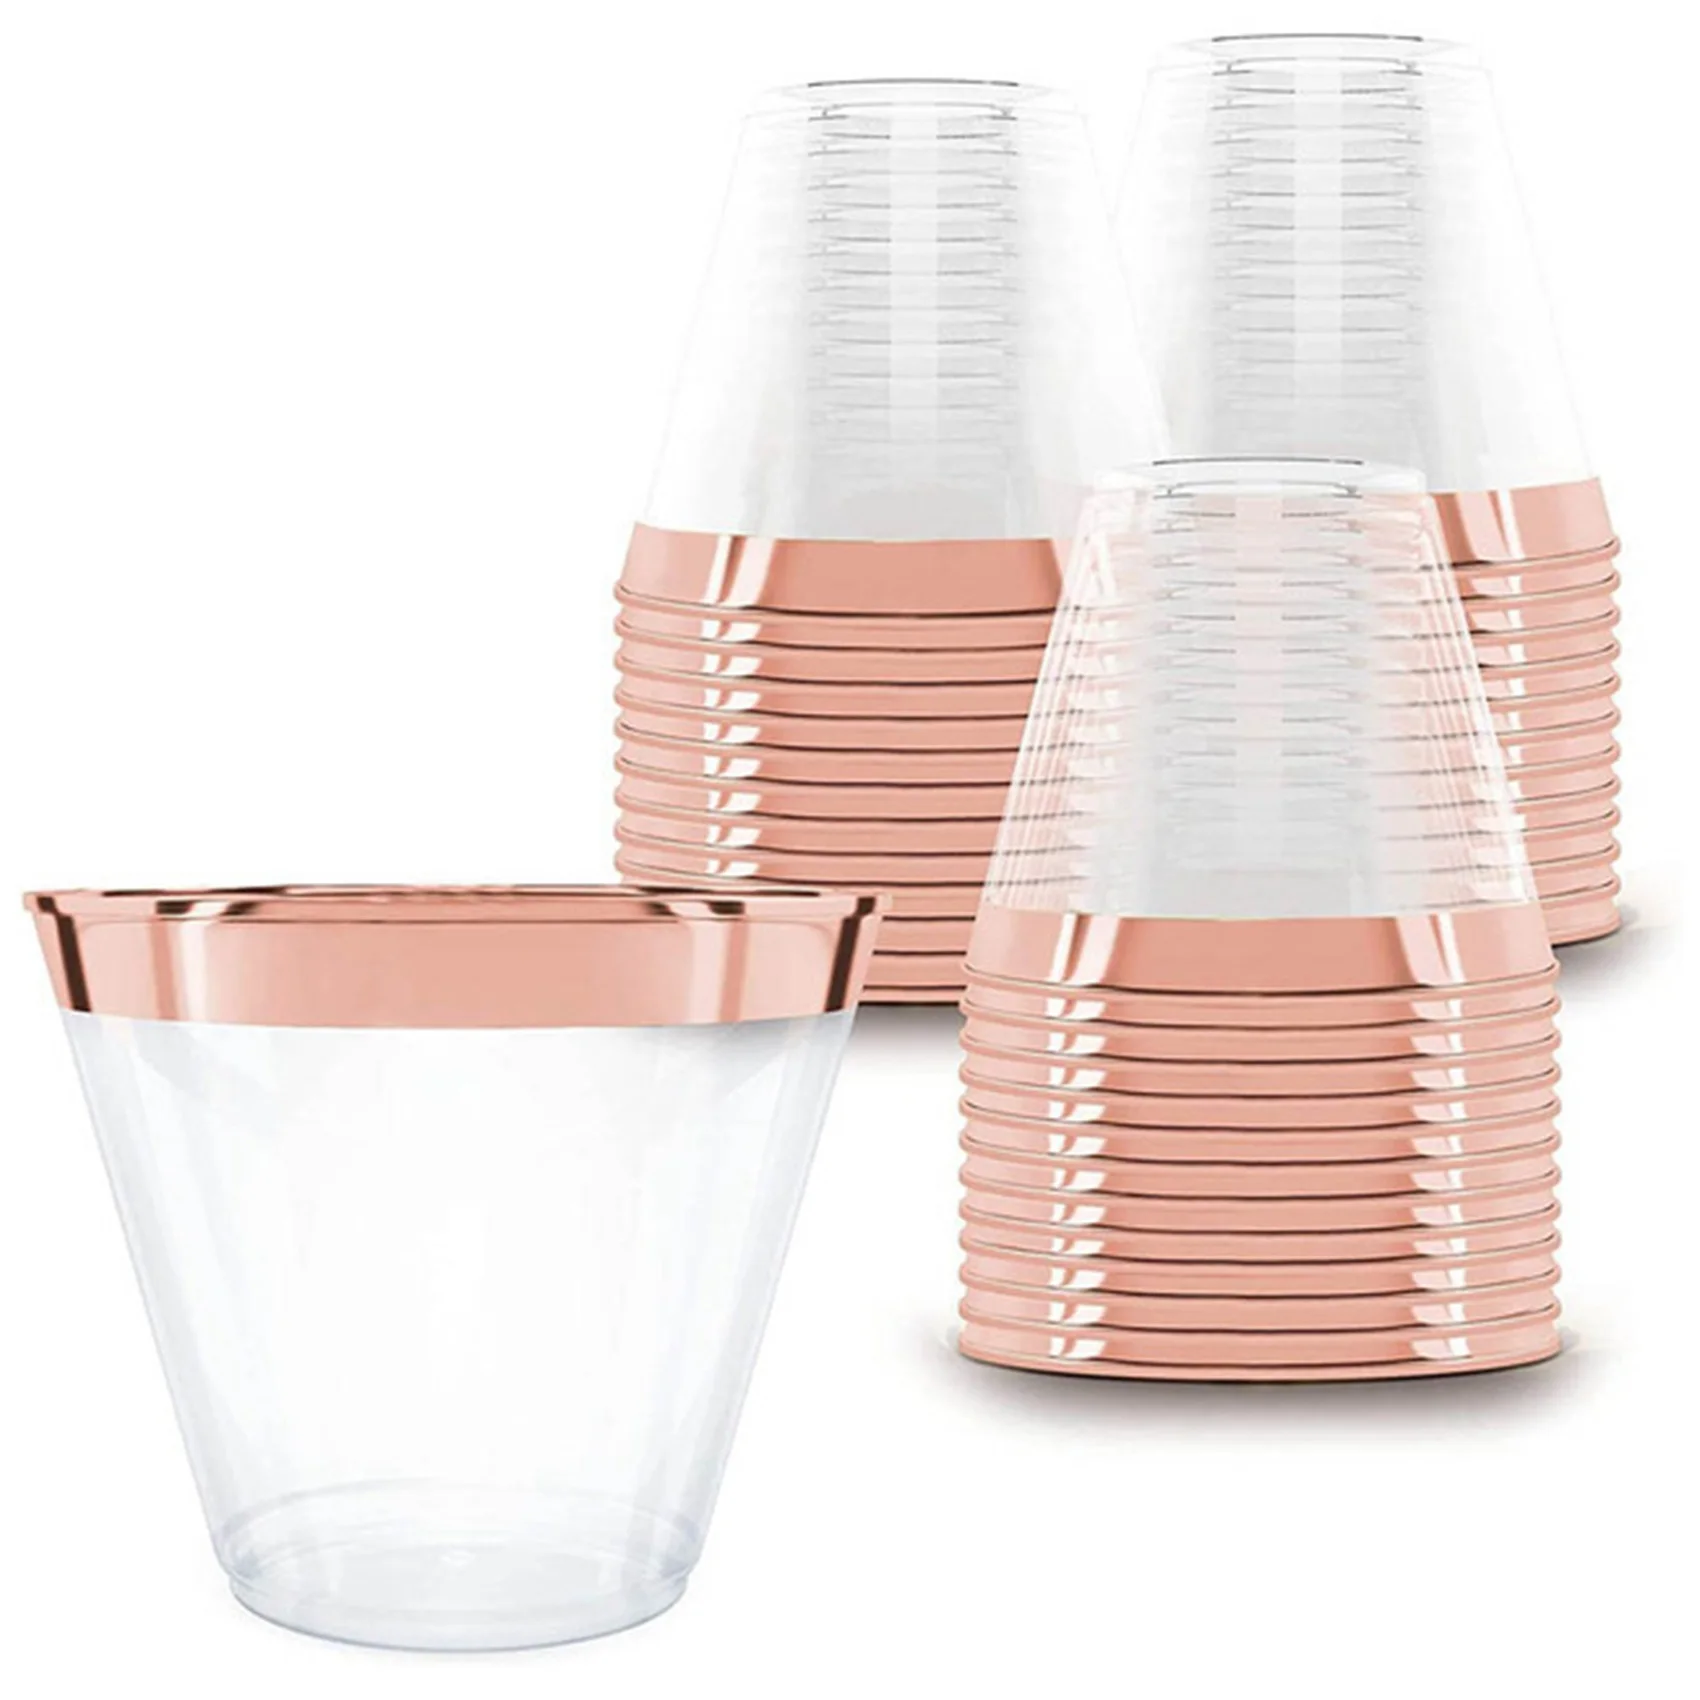 

Пластиковый стакан 9 унций, жесткий одноразовый стакан, пластиковый стакан для вина, женский свадебный стакан для вина, пластиковый стакан, обод из розового золота